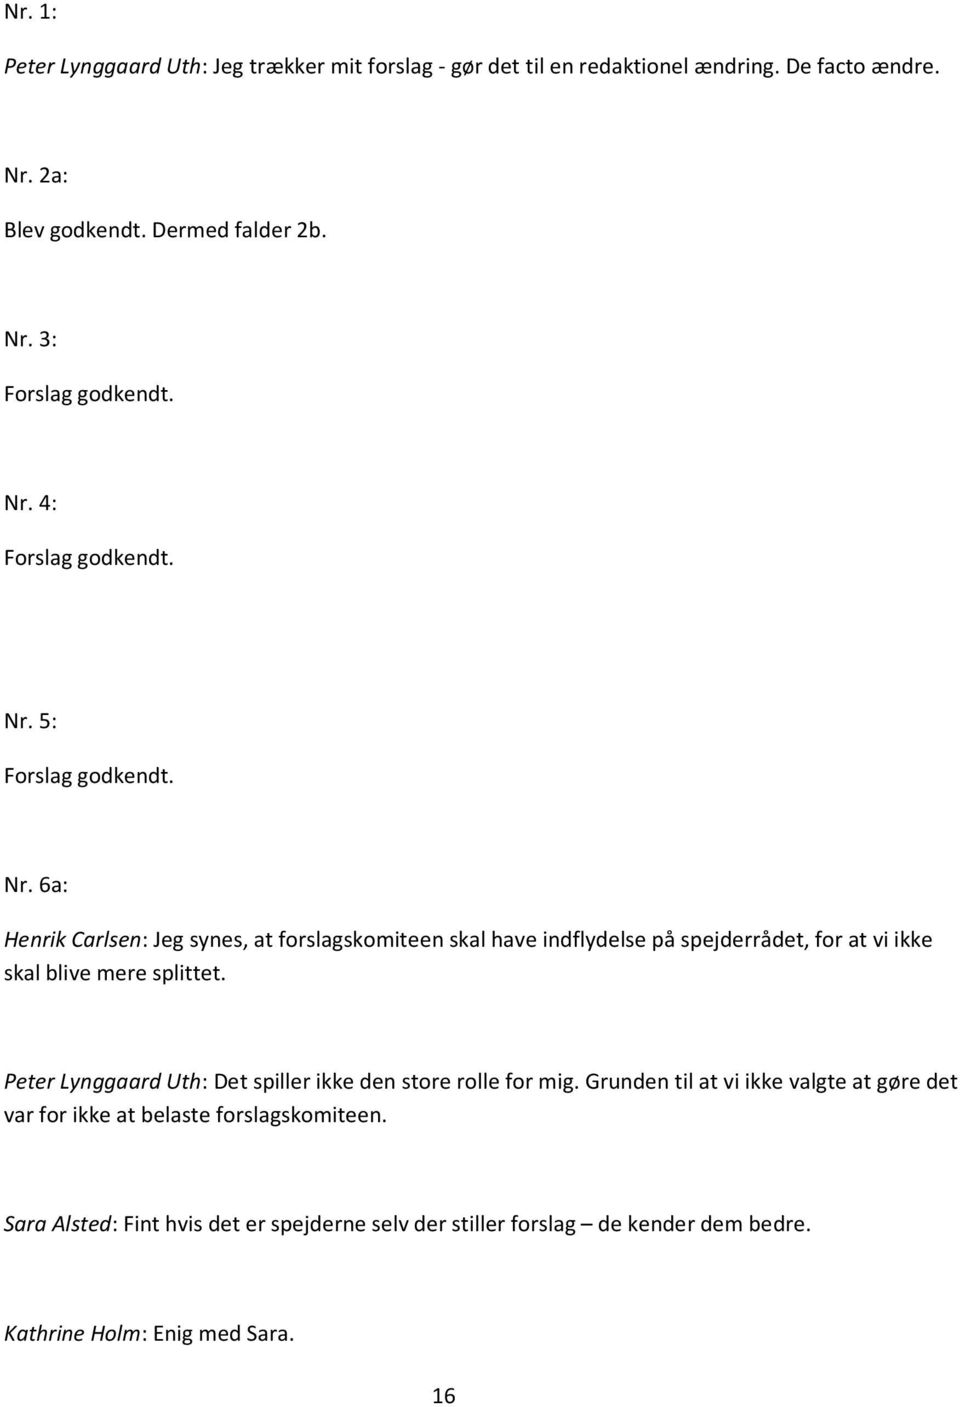 5: Forslag godkendt. Nr. 6a: Henrik Carlsen: Jeg synes, at forslagskomiteen skal have indflydelse på spejderrådet, for at vi ikke skal blive mere splittet.